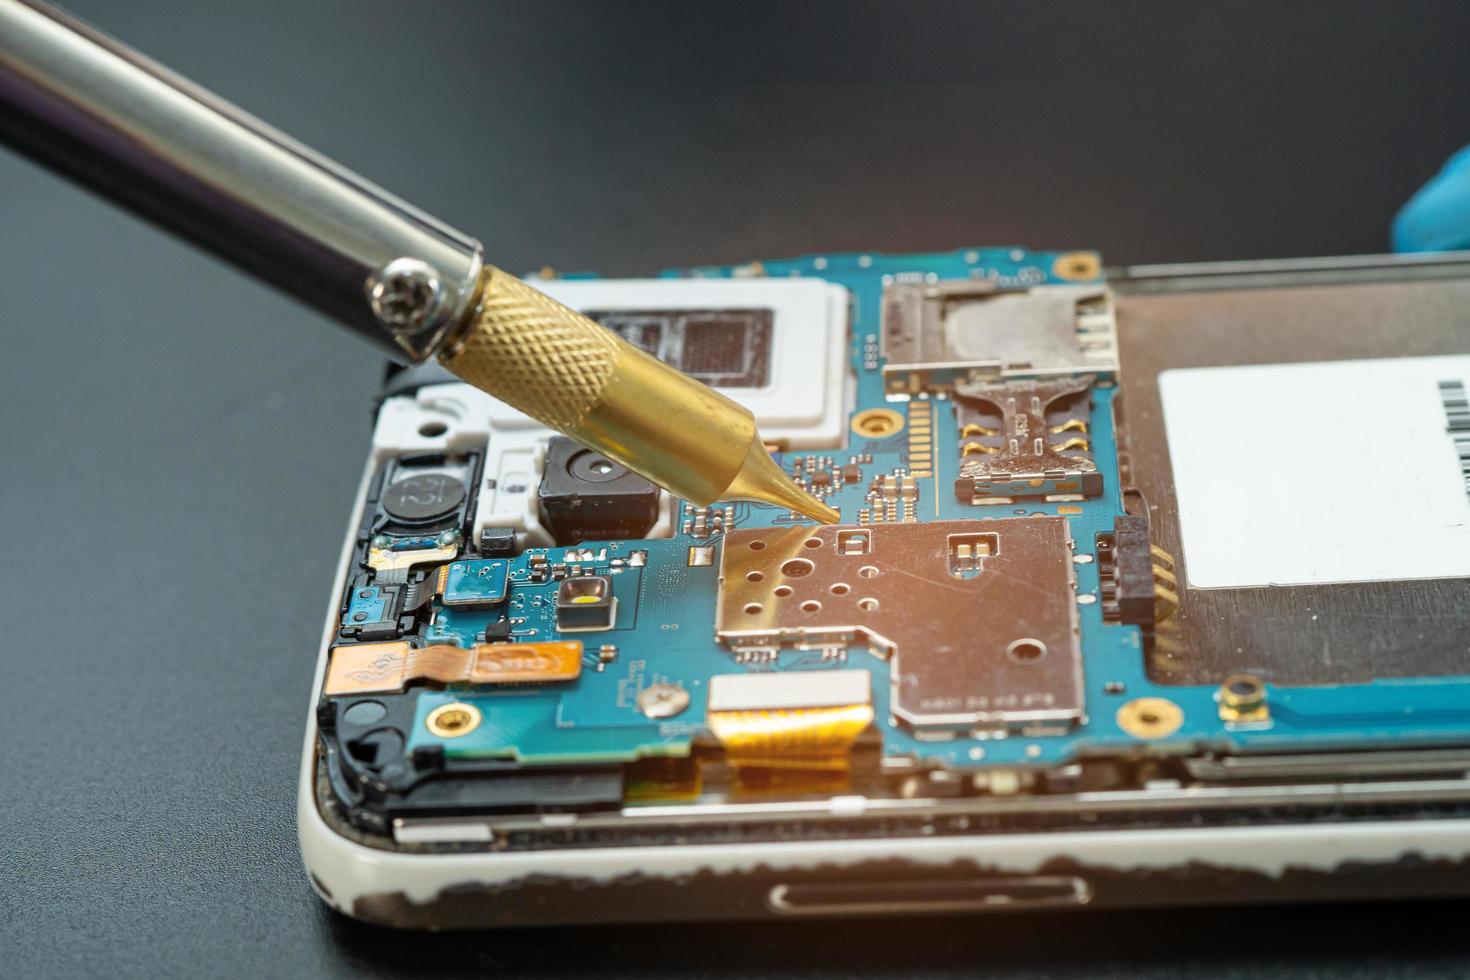 technicus die binnenkant van mobiele telefoon repareert door soldeerbout. geïntegreerde schakeling. het concept van gegevens, hardware, technologie. foto